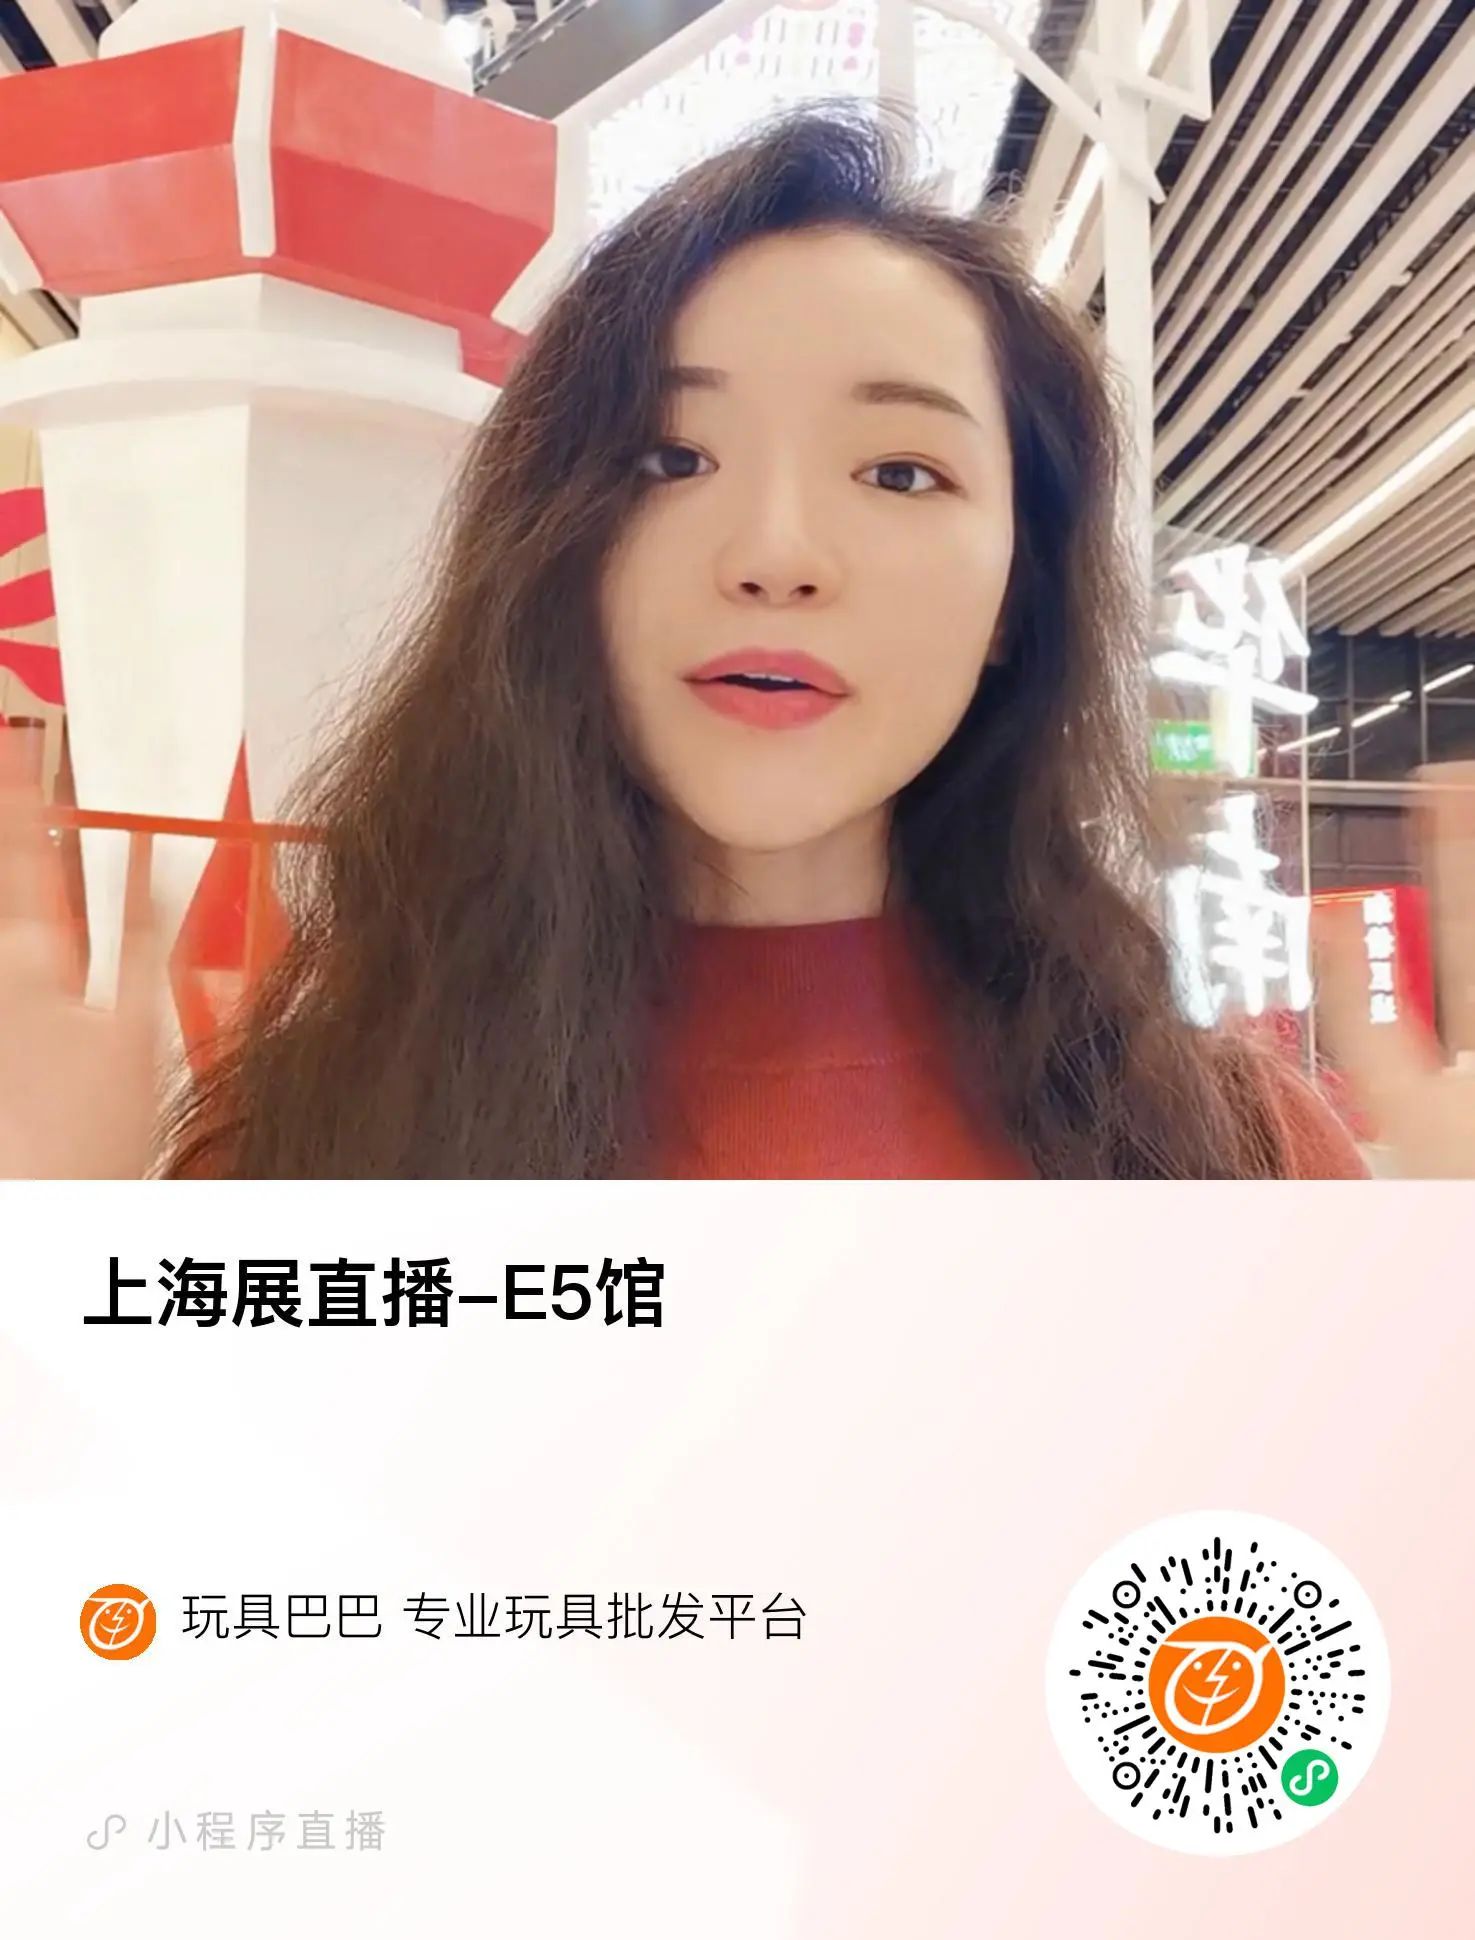 上海展直播-E5馆